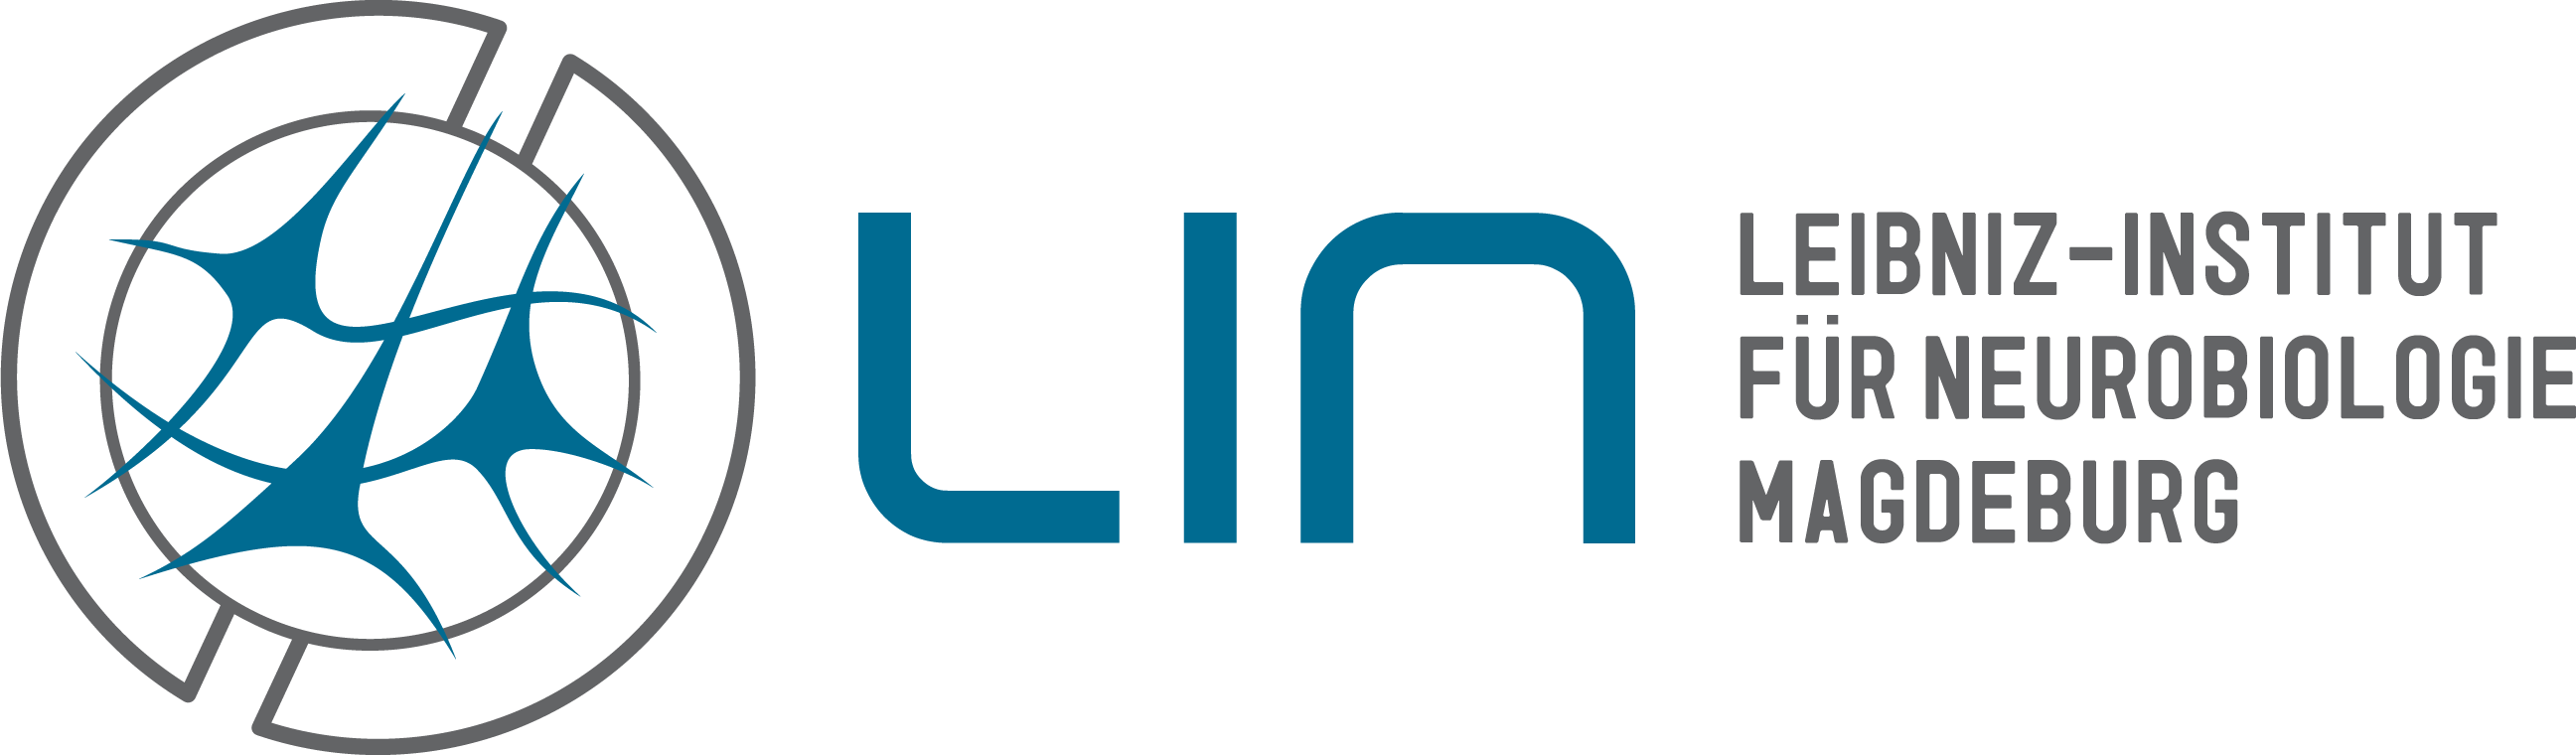 Logo-Abbildung Leibniz-Institut für Neurobiologie